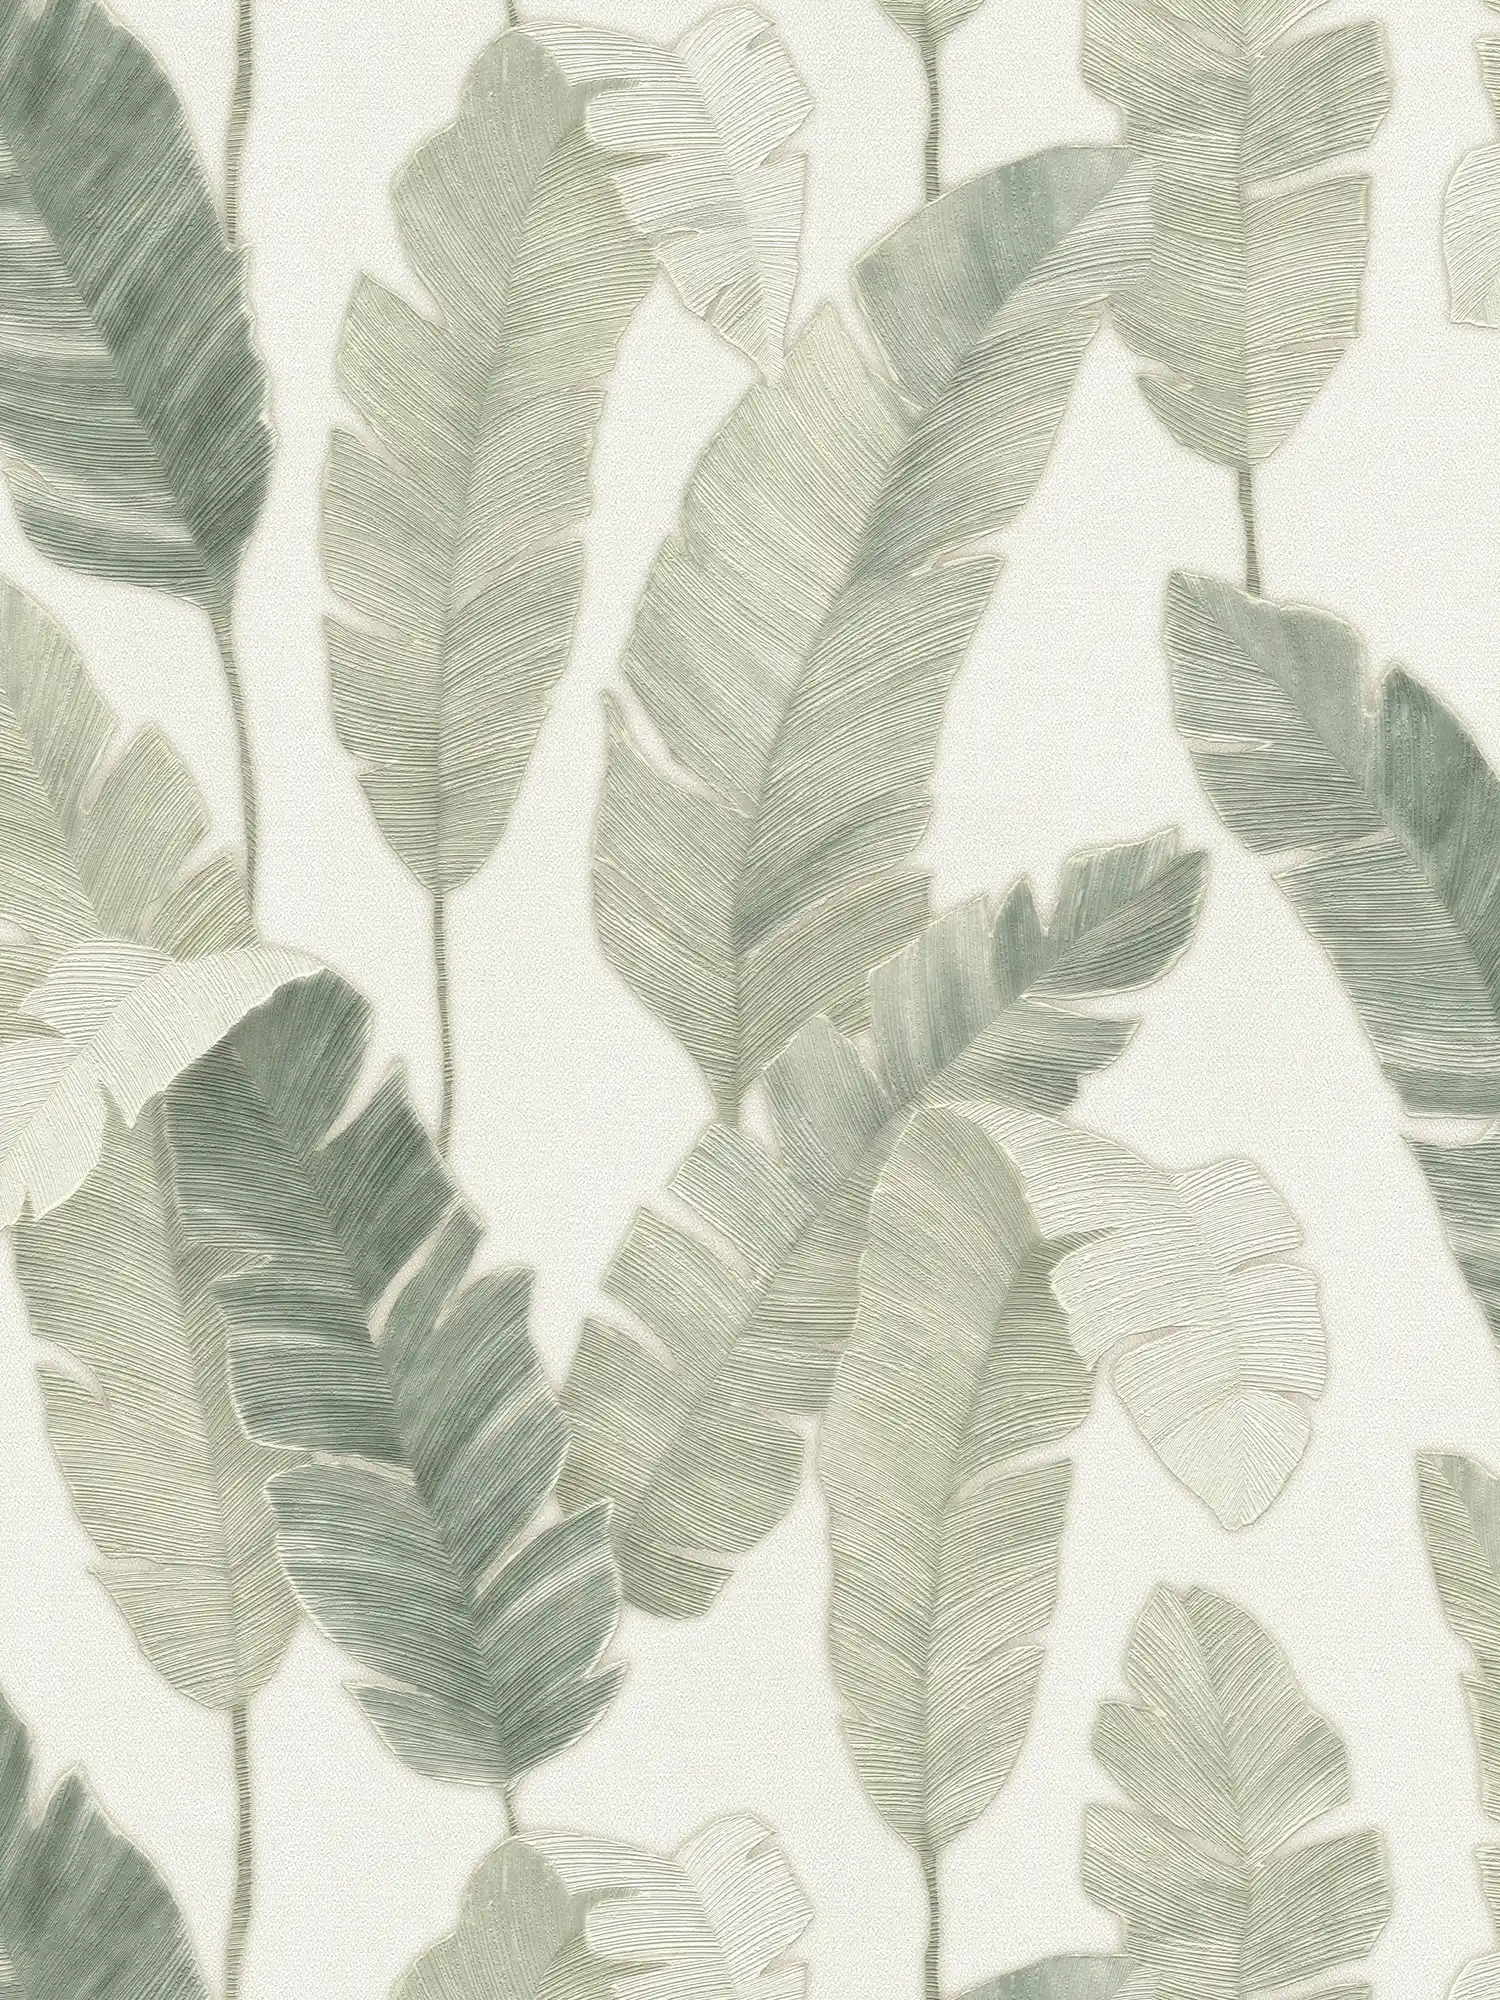         Papel pintado no tejido con hojas de palmera en color claro - blanco, verde, azul
    